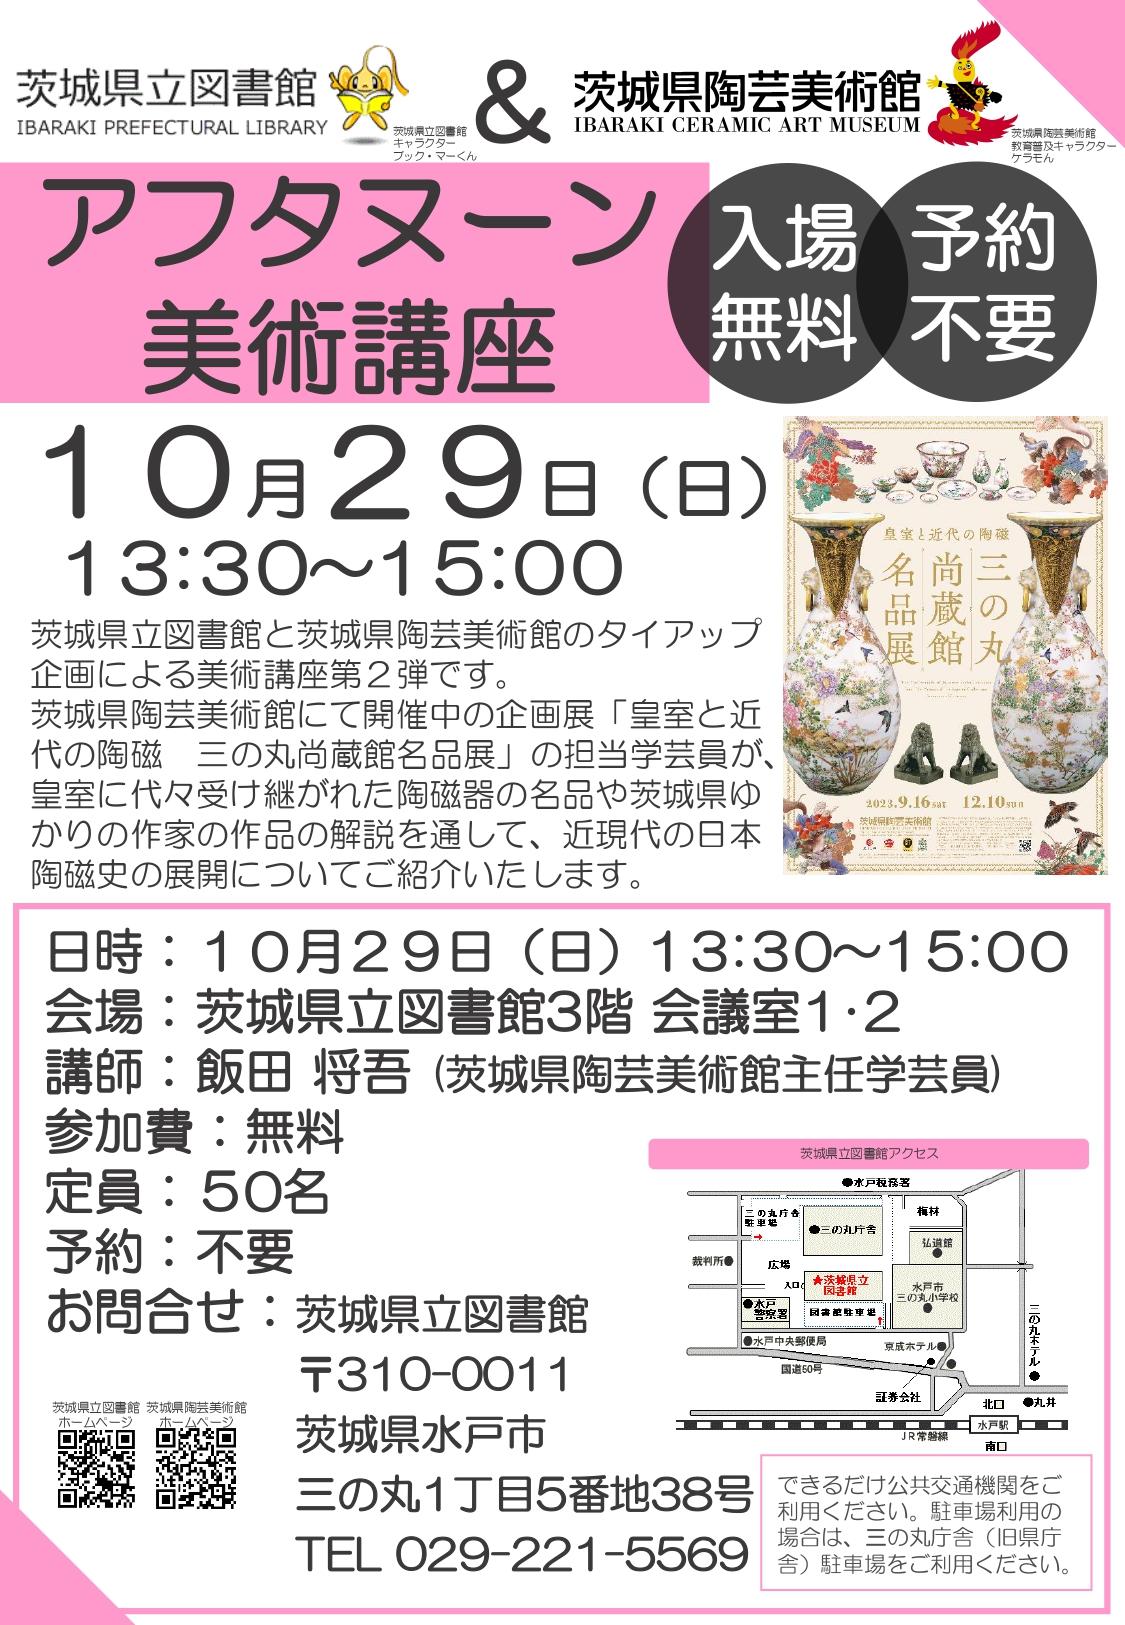 【10月29日実施】アフタヌーン美術講座【茨城県立図書館タイアップ企画】※終了いたしました。